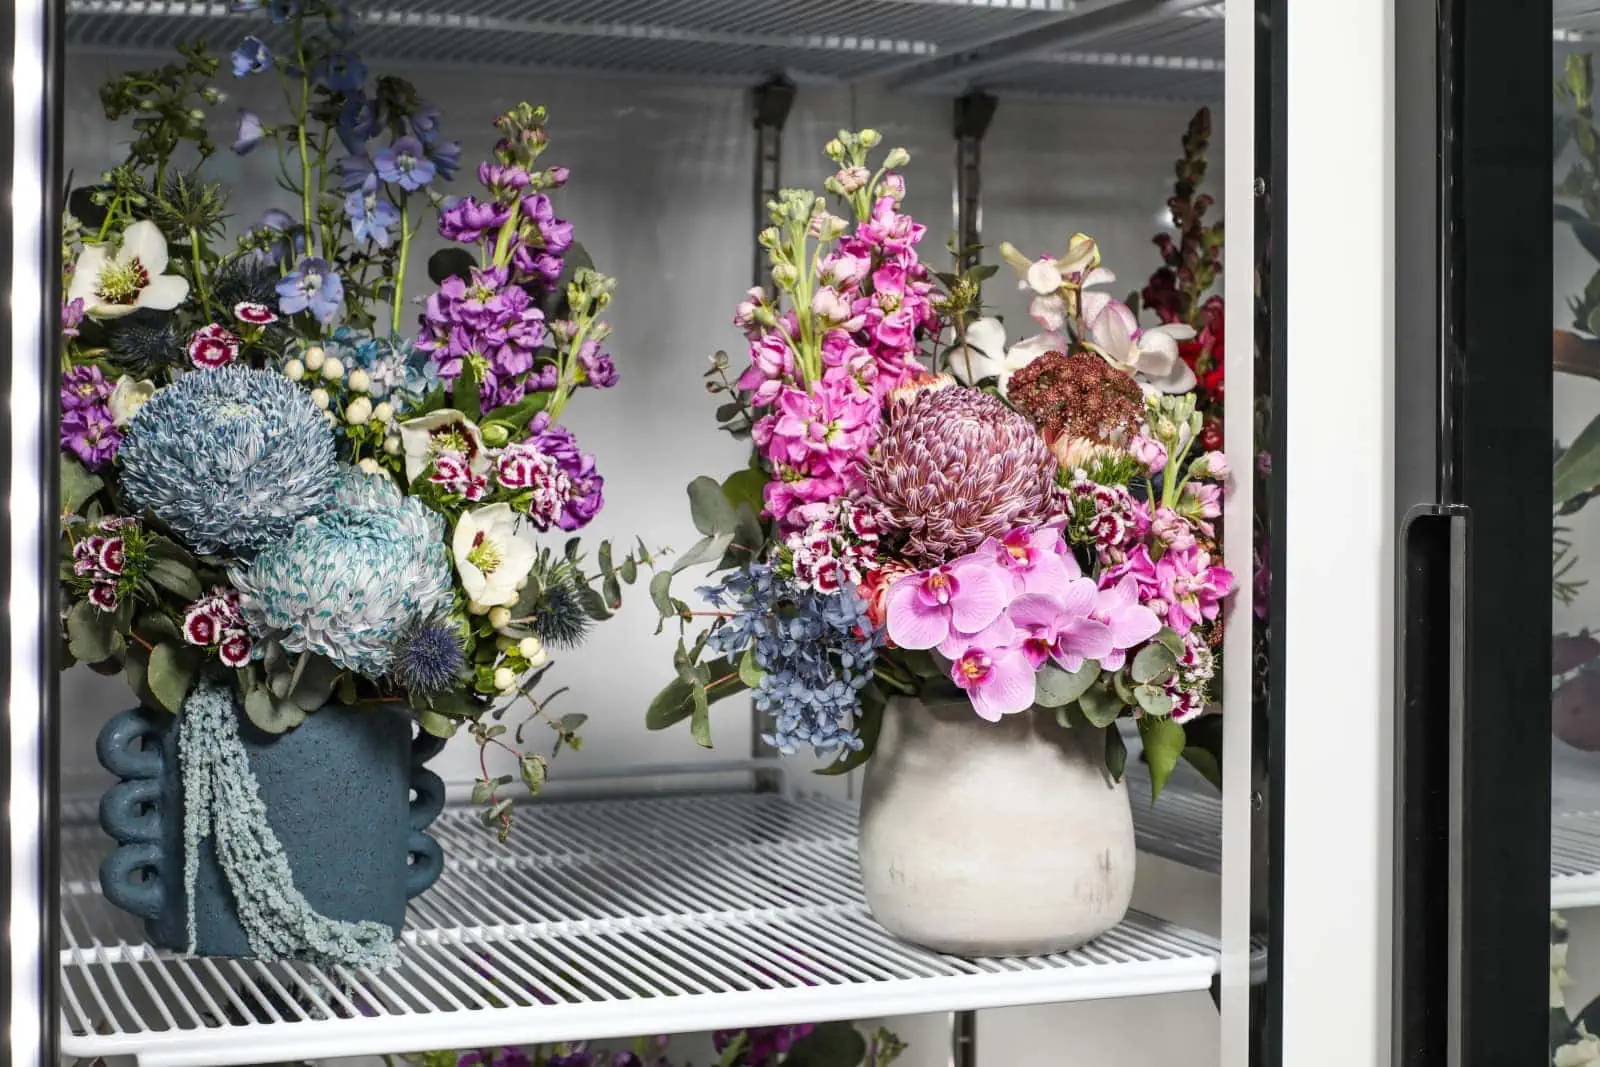 Inside flower display fridge